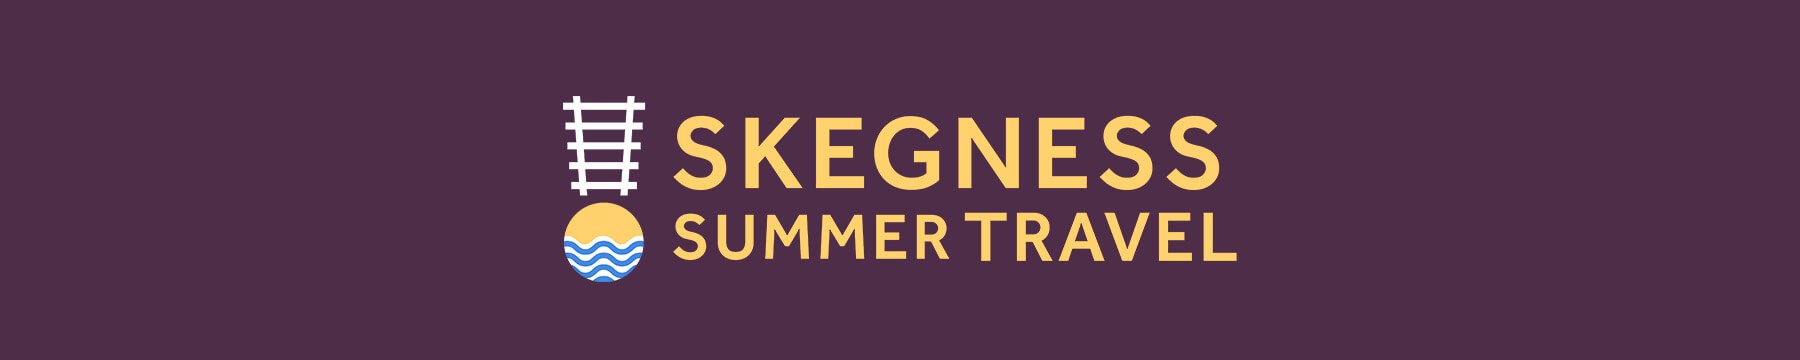 Skegness Summer Travel